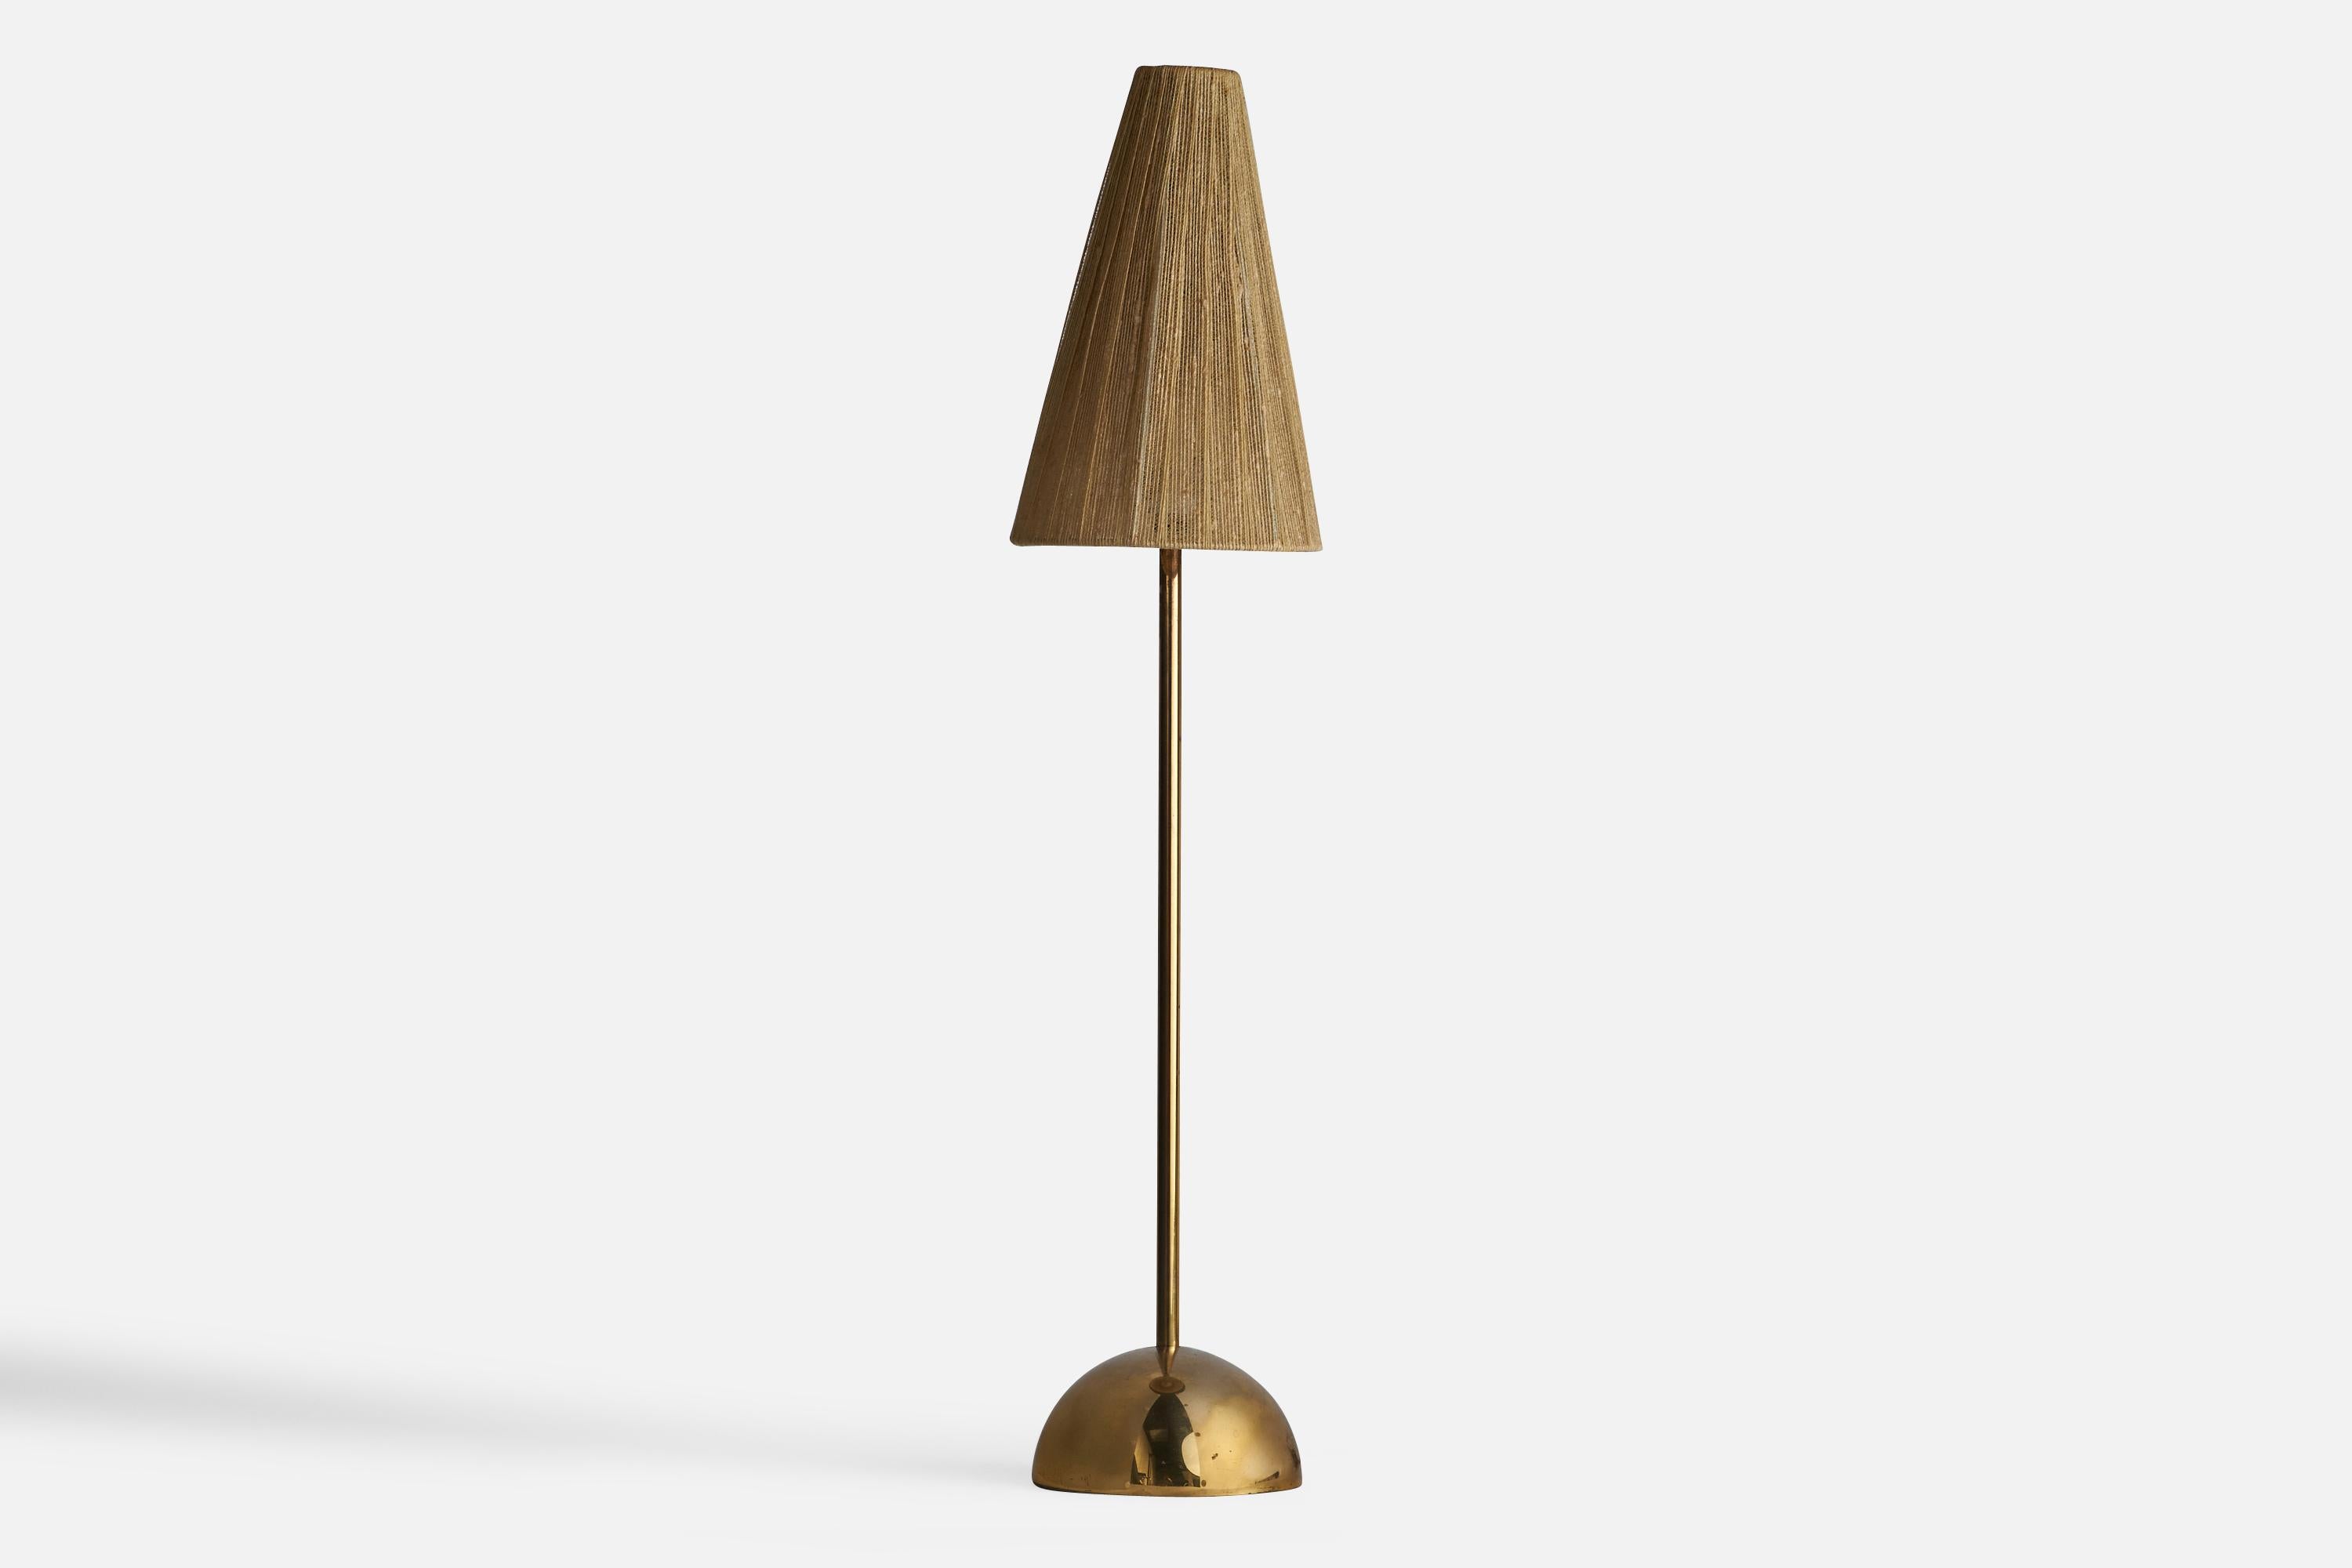 Lampe de table en laiton et tissu beige, conçue et produite par Bergboms, Suède, années 1960.

Dimensions globales (pouces) : 28.25